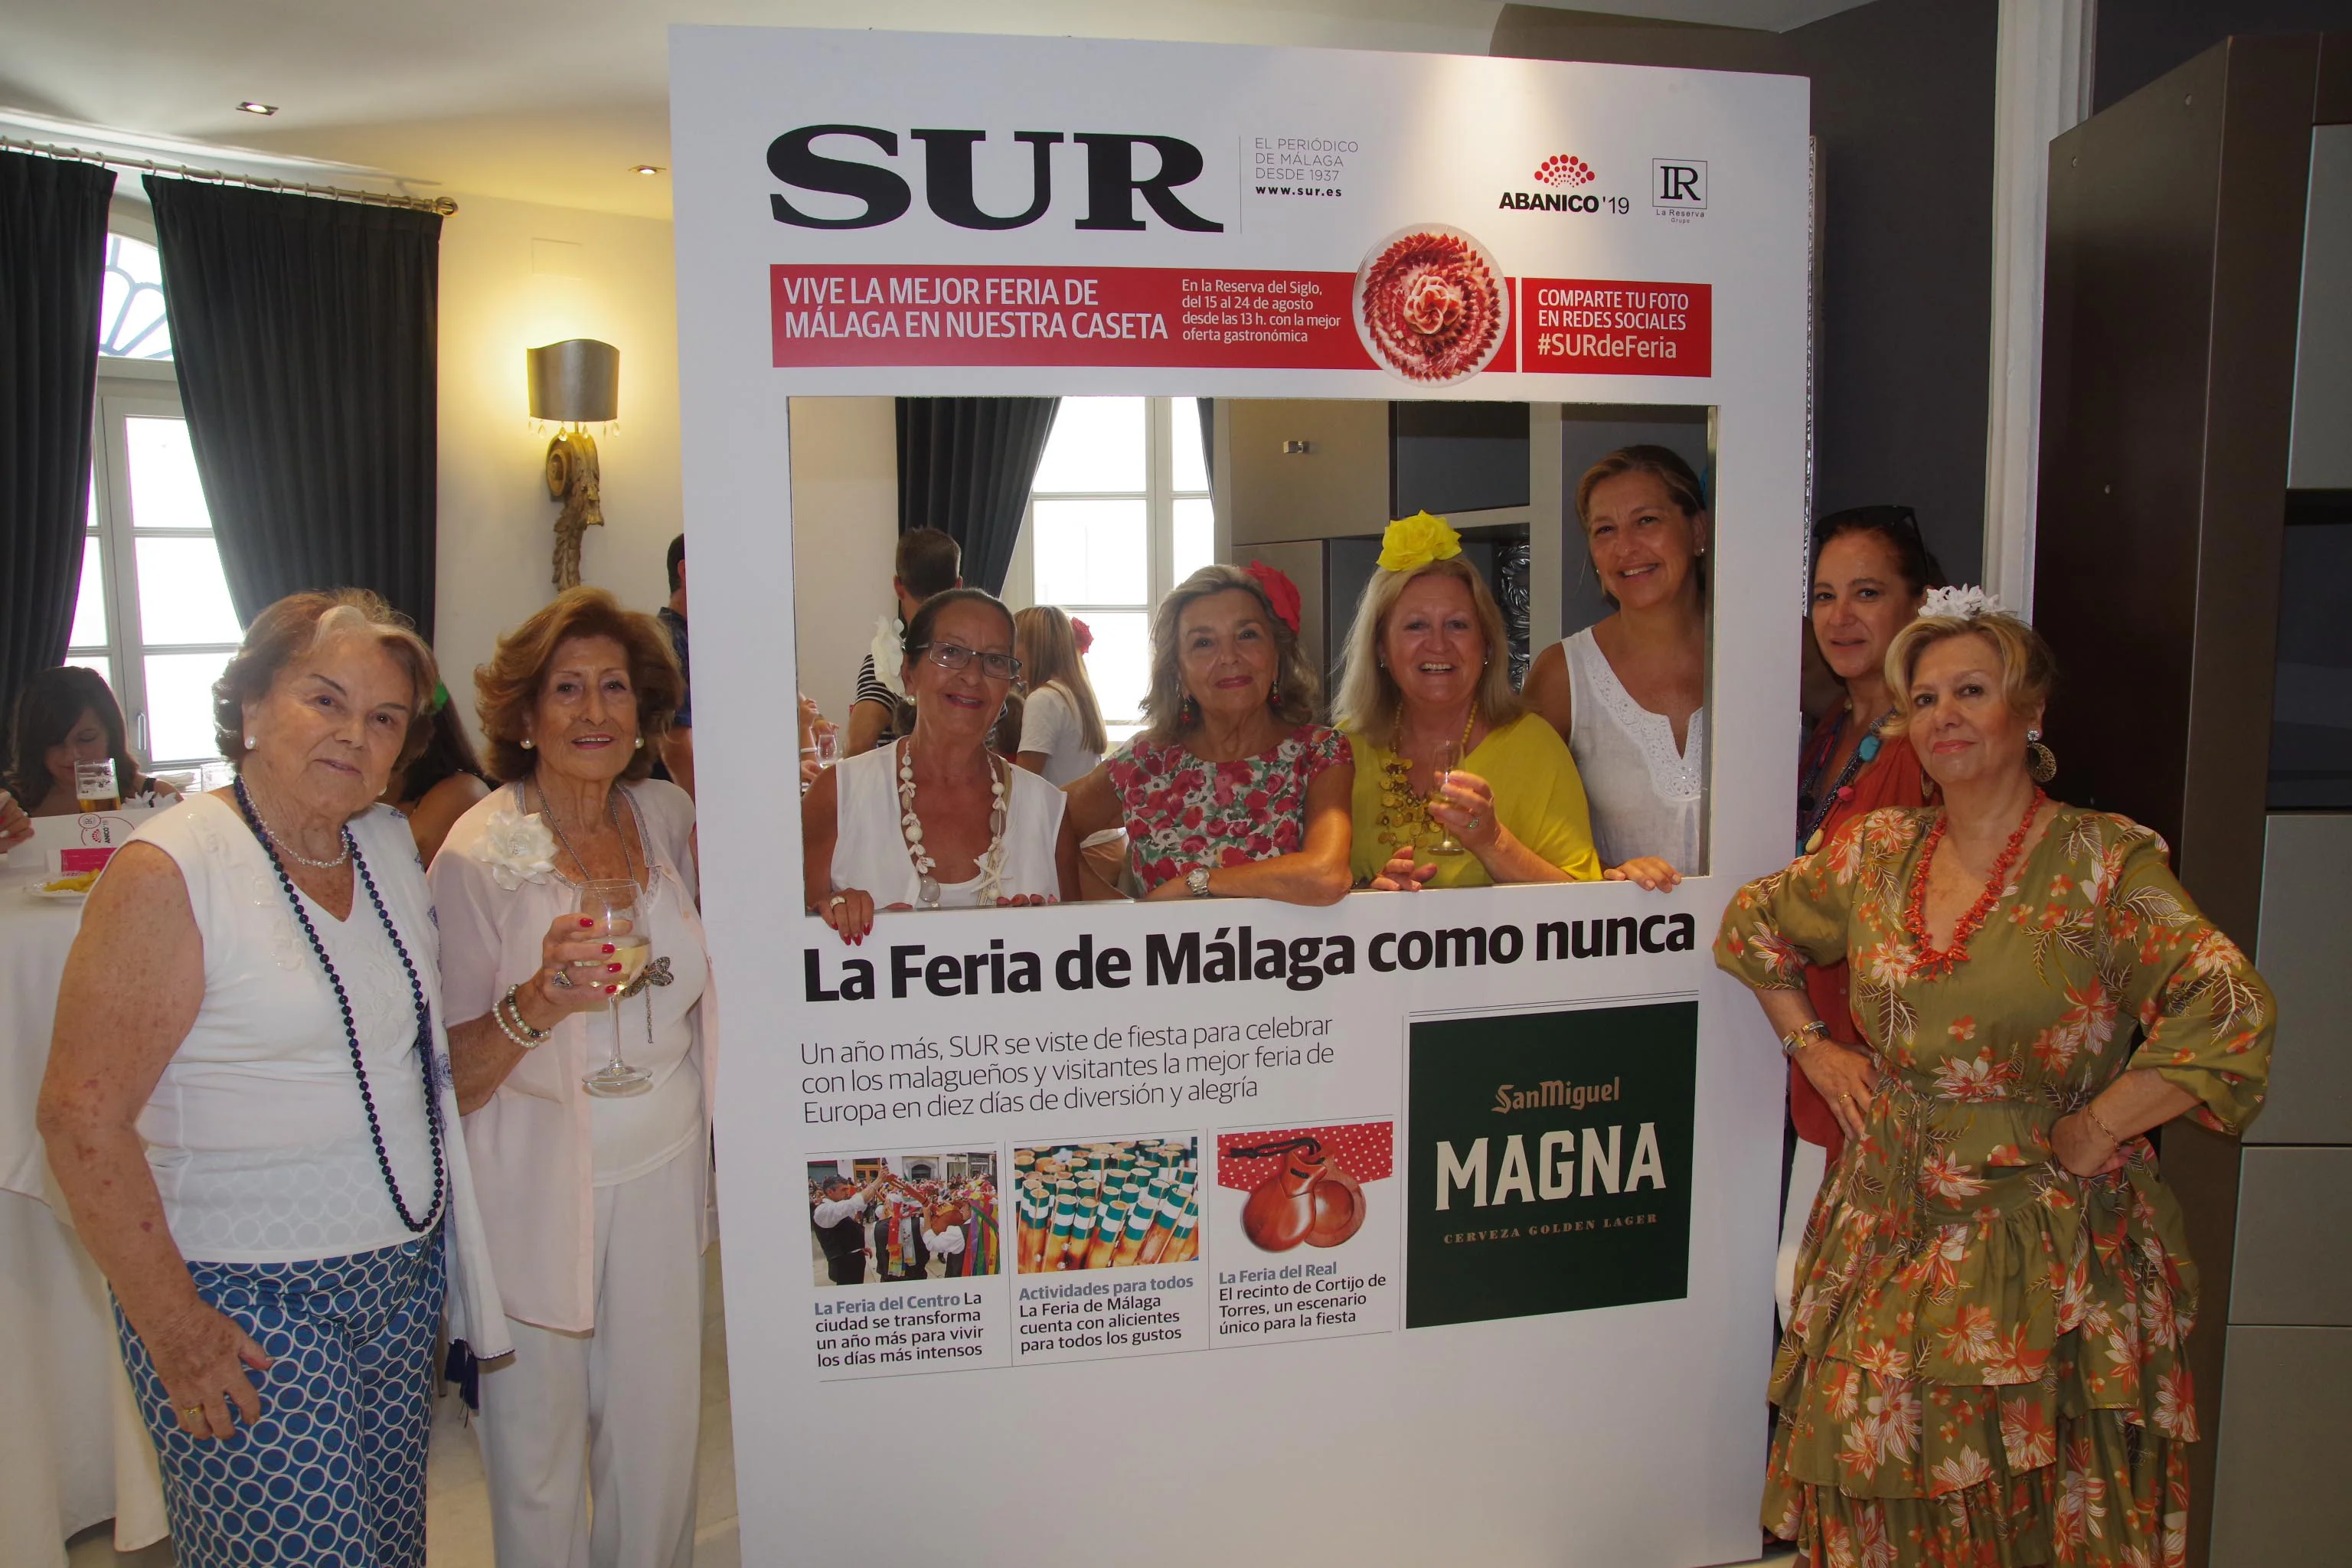 Pilar Pérez-Cornejo, Marina del Castillo, Celia Clemente, María Victoria Parres, Gracia González-Cuevas, Arantxa Labarta, Sonia Cuevas y Encarna Muñoz.